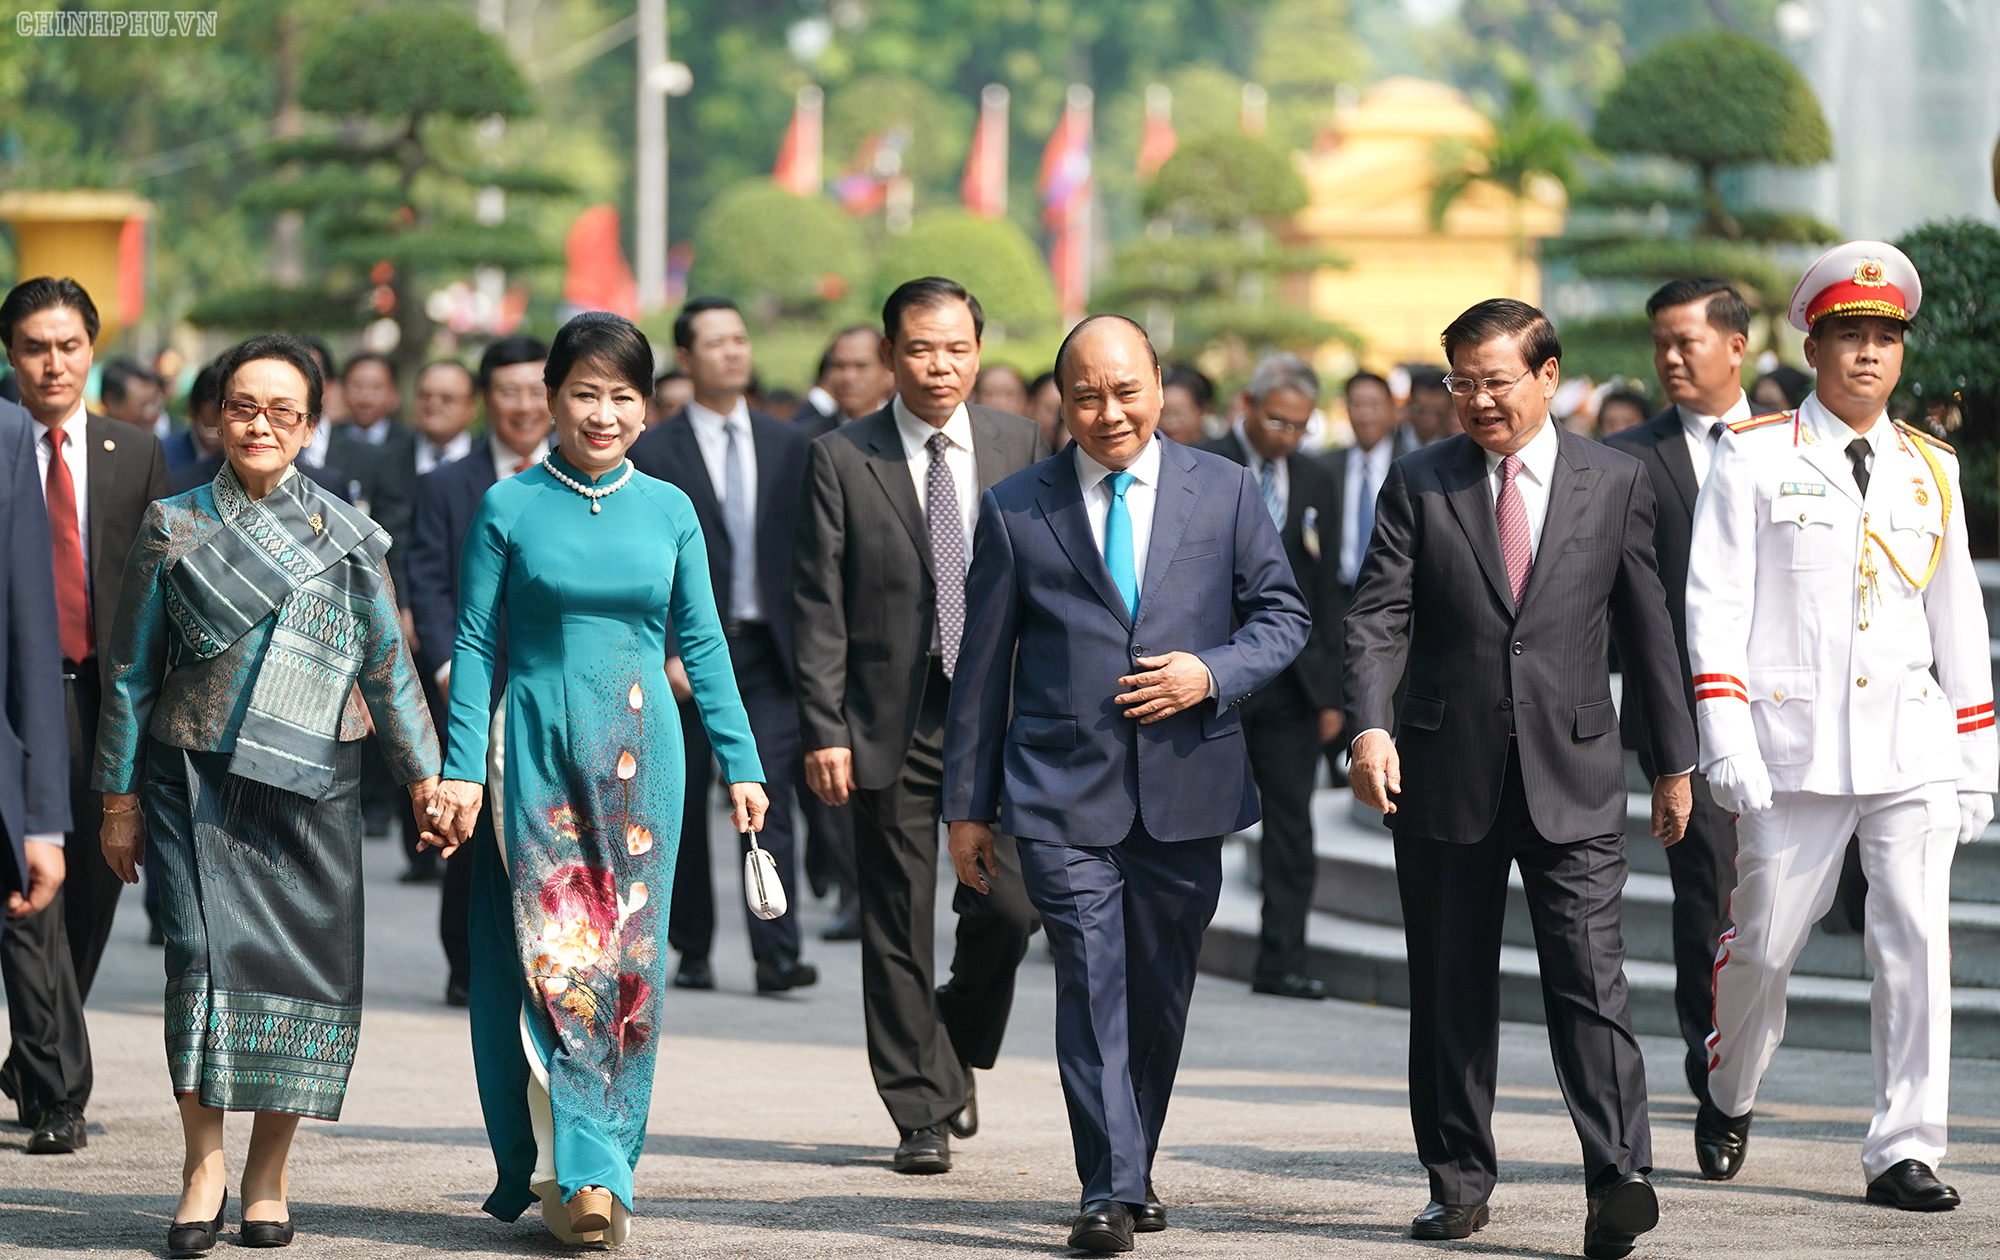 Chuyến thăm chính thức Việt Nam của Thủ tướng Lào Thongloun Sisoulith diễn ra trong bối cảnh quan hệ hợp tác toàn diện giữa hai nước Việt Nam và Lào đang phát triển tốt đẹp, hứa hẹn đạt nhiều tầm cao mới. Ảnh VGP/Quang Hiếu